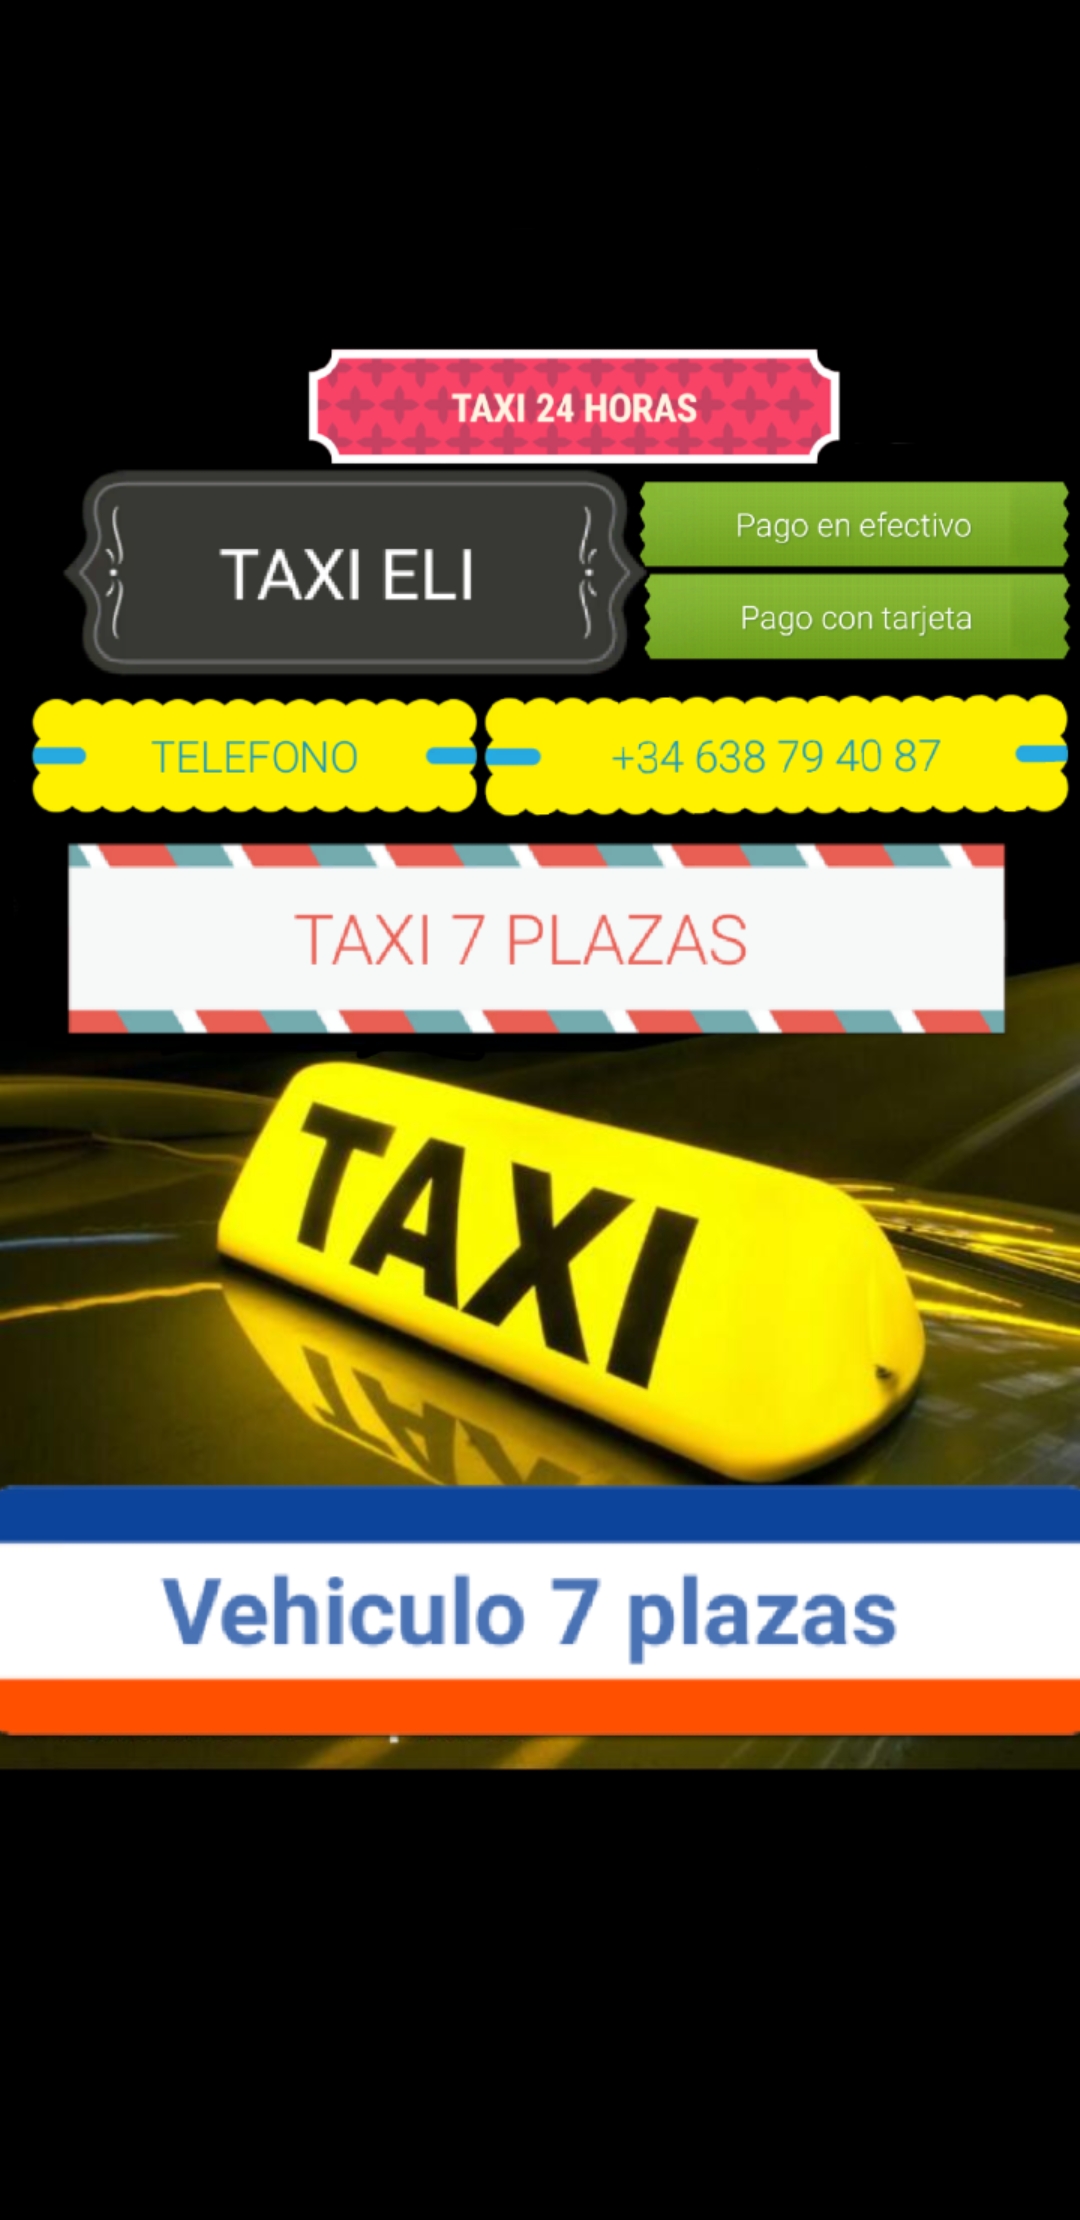 Taxi 24 Horas Chiclana de la Frontera (Taxi Eli)